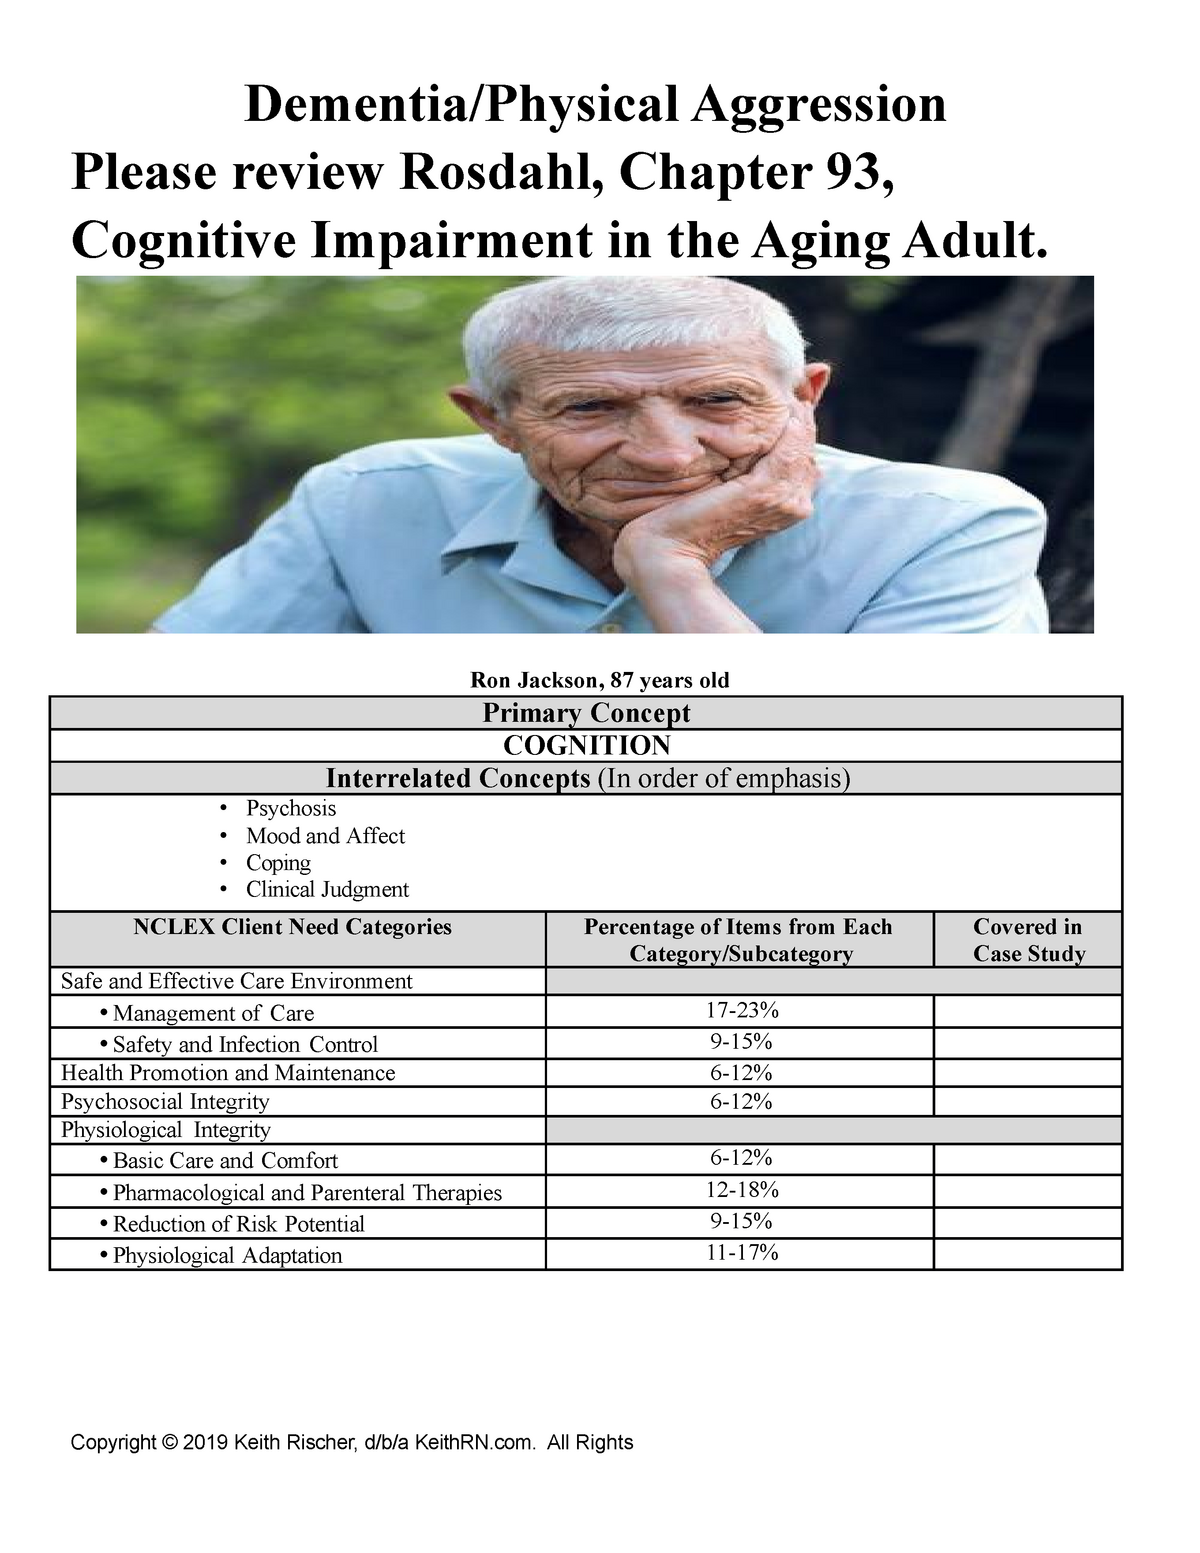 pn dementia case study quiz